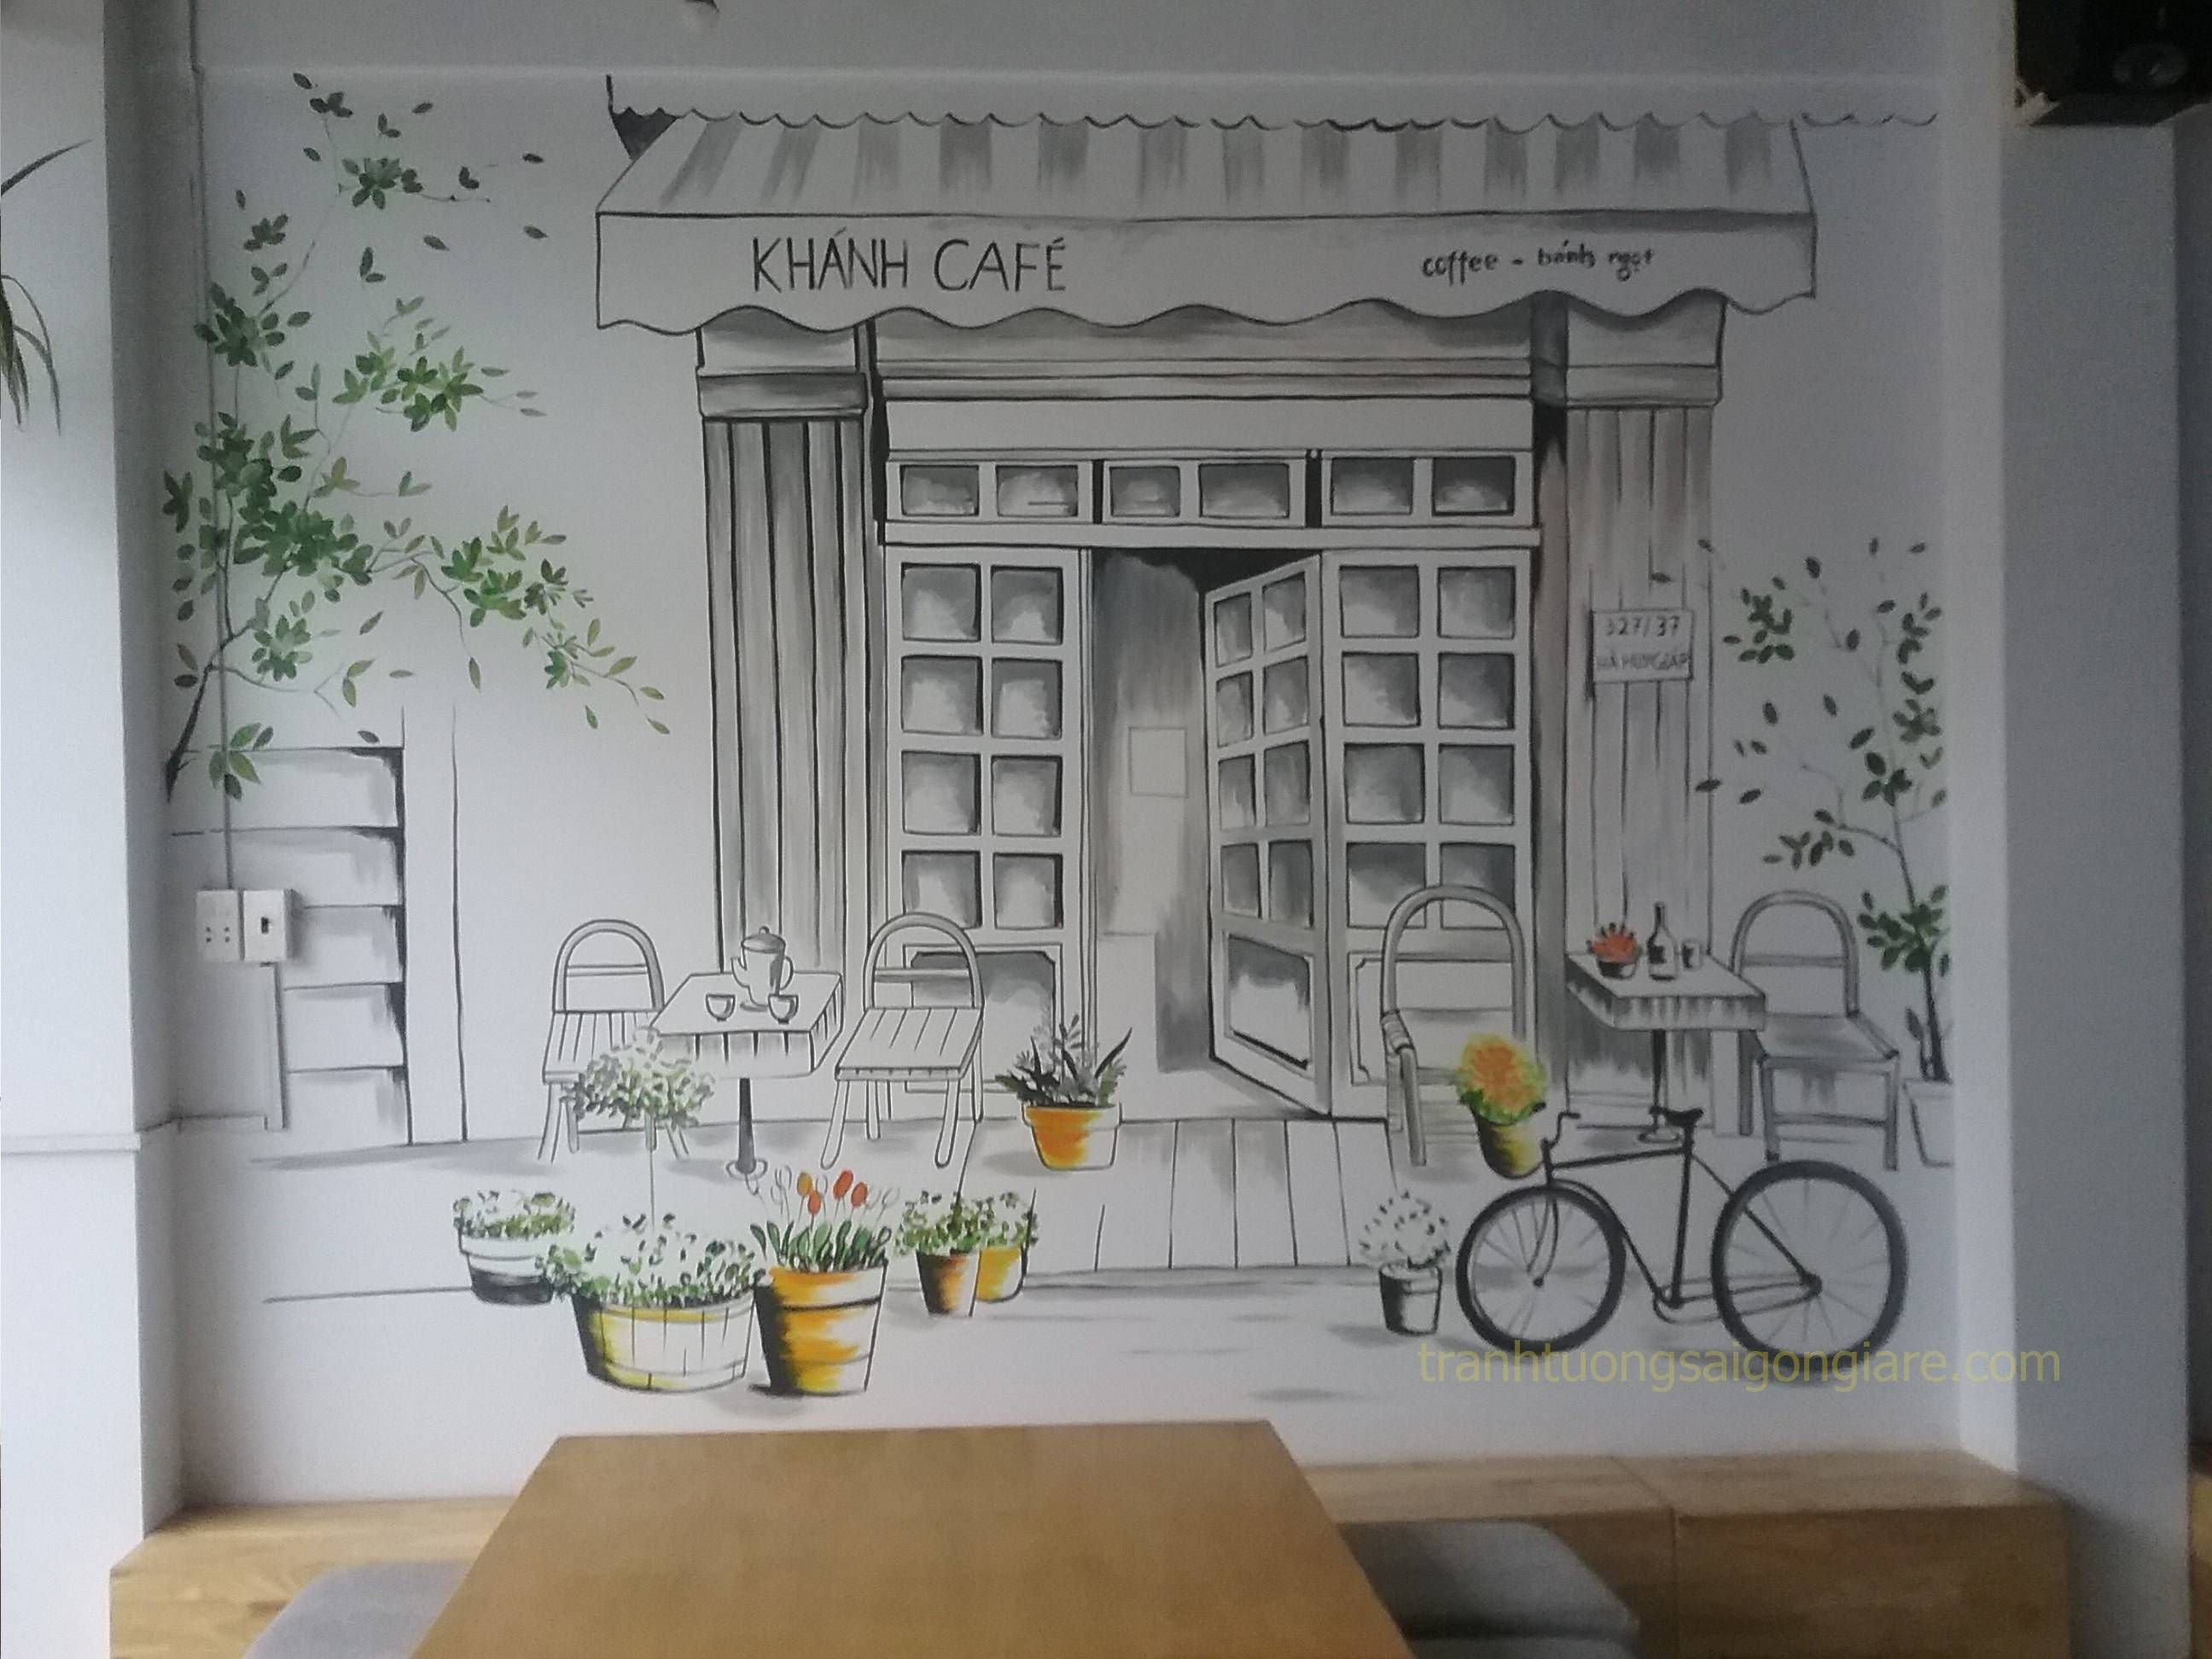 Роспись стен на кухне в стиле кафе